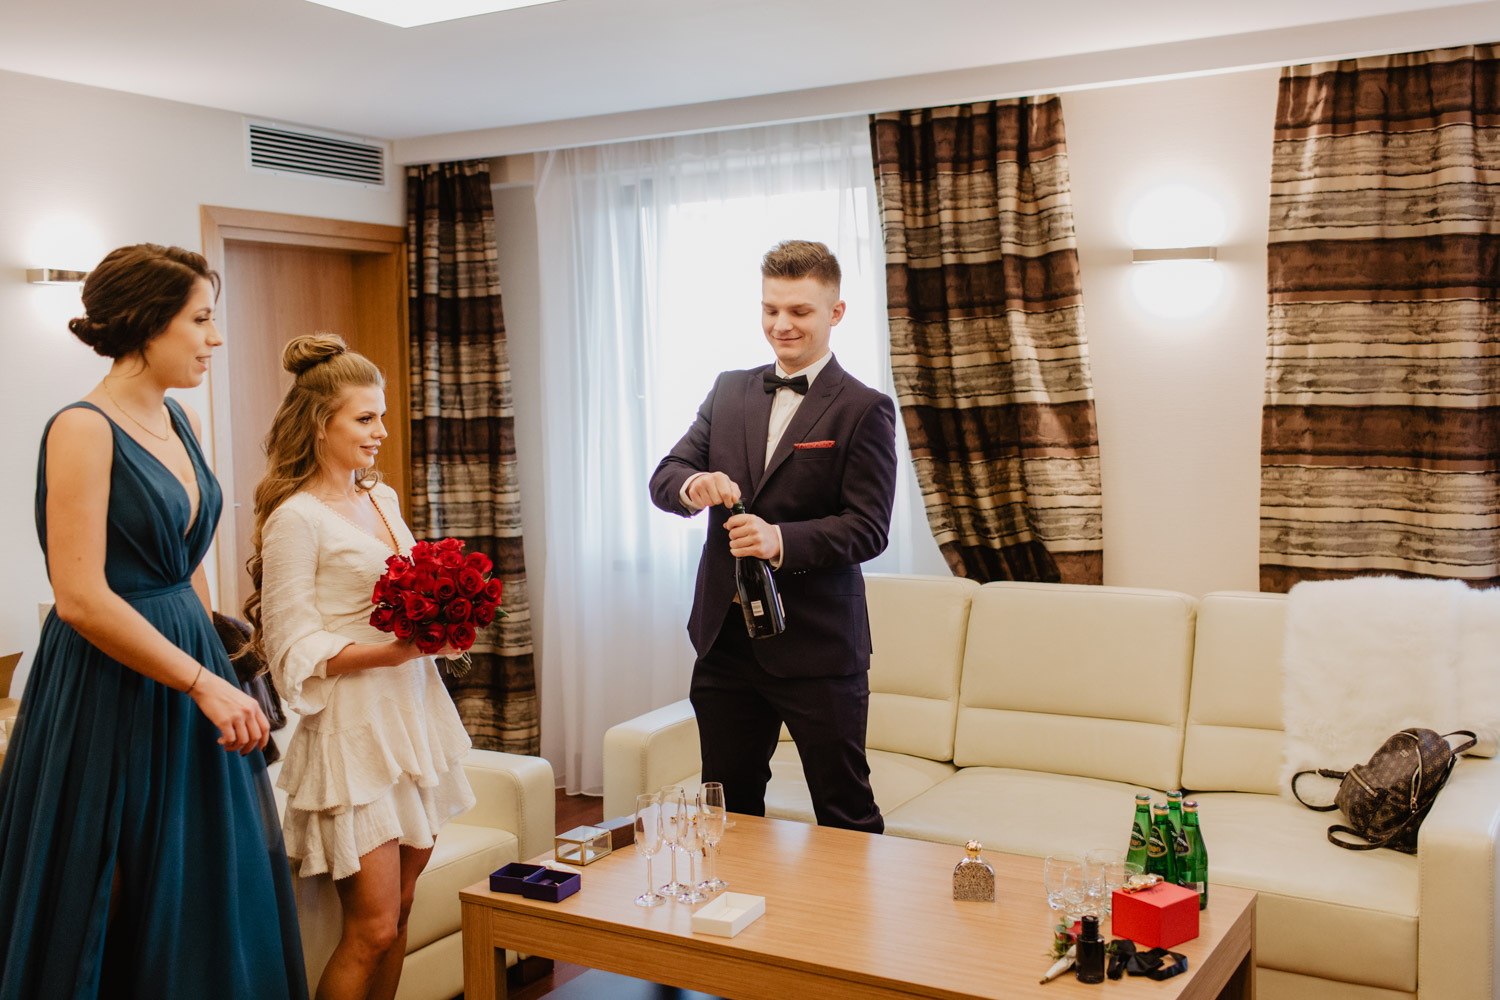 Ślub i wesele Hotel Amazonka | Olga i Szymon | fotografia ślubna